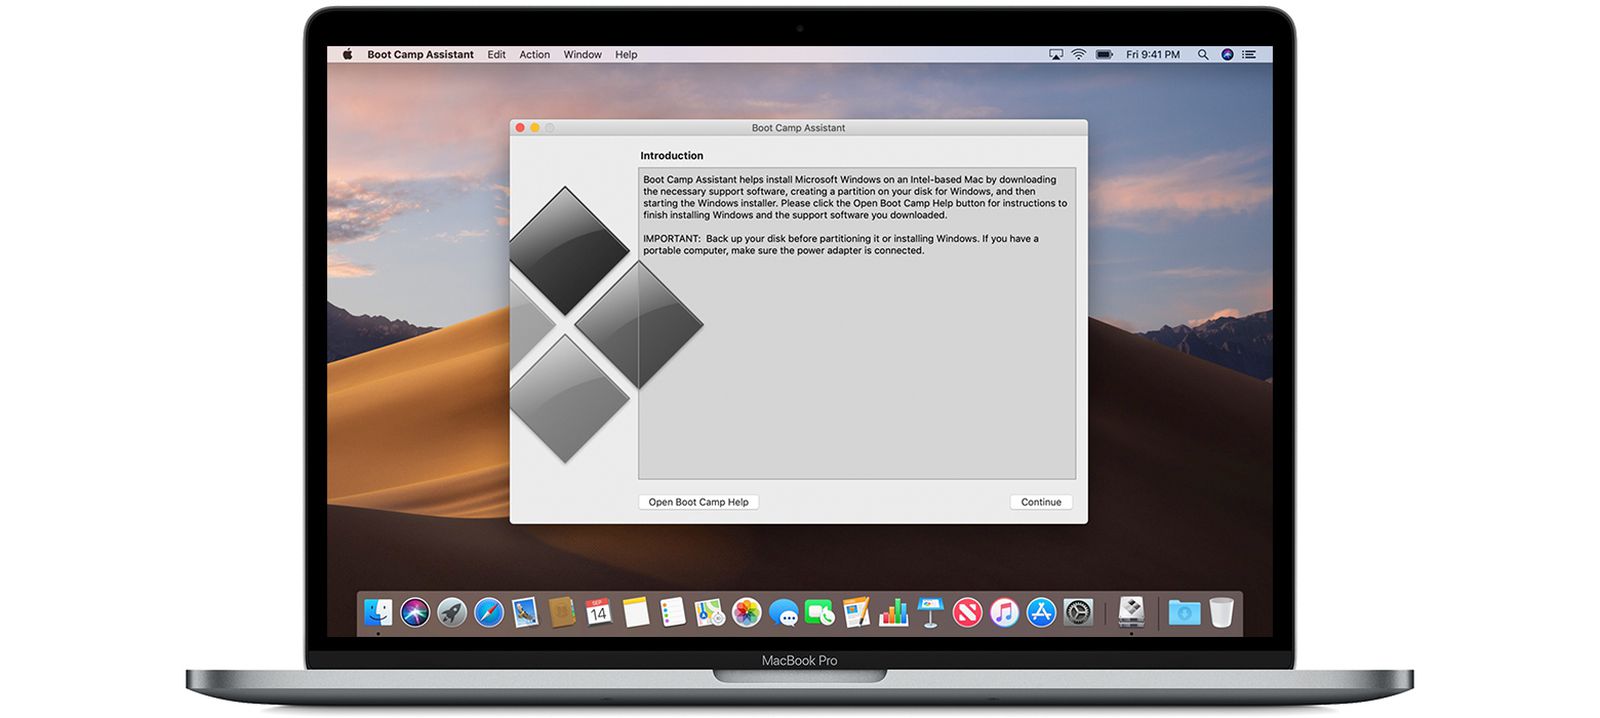 apple mac security update